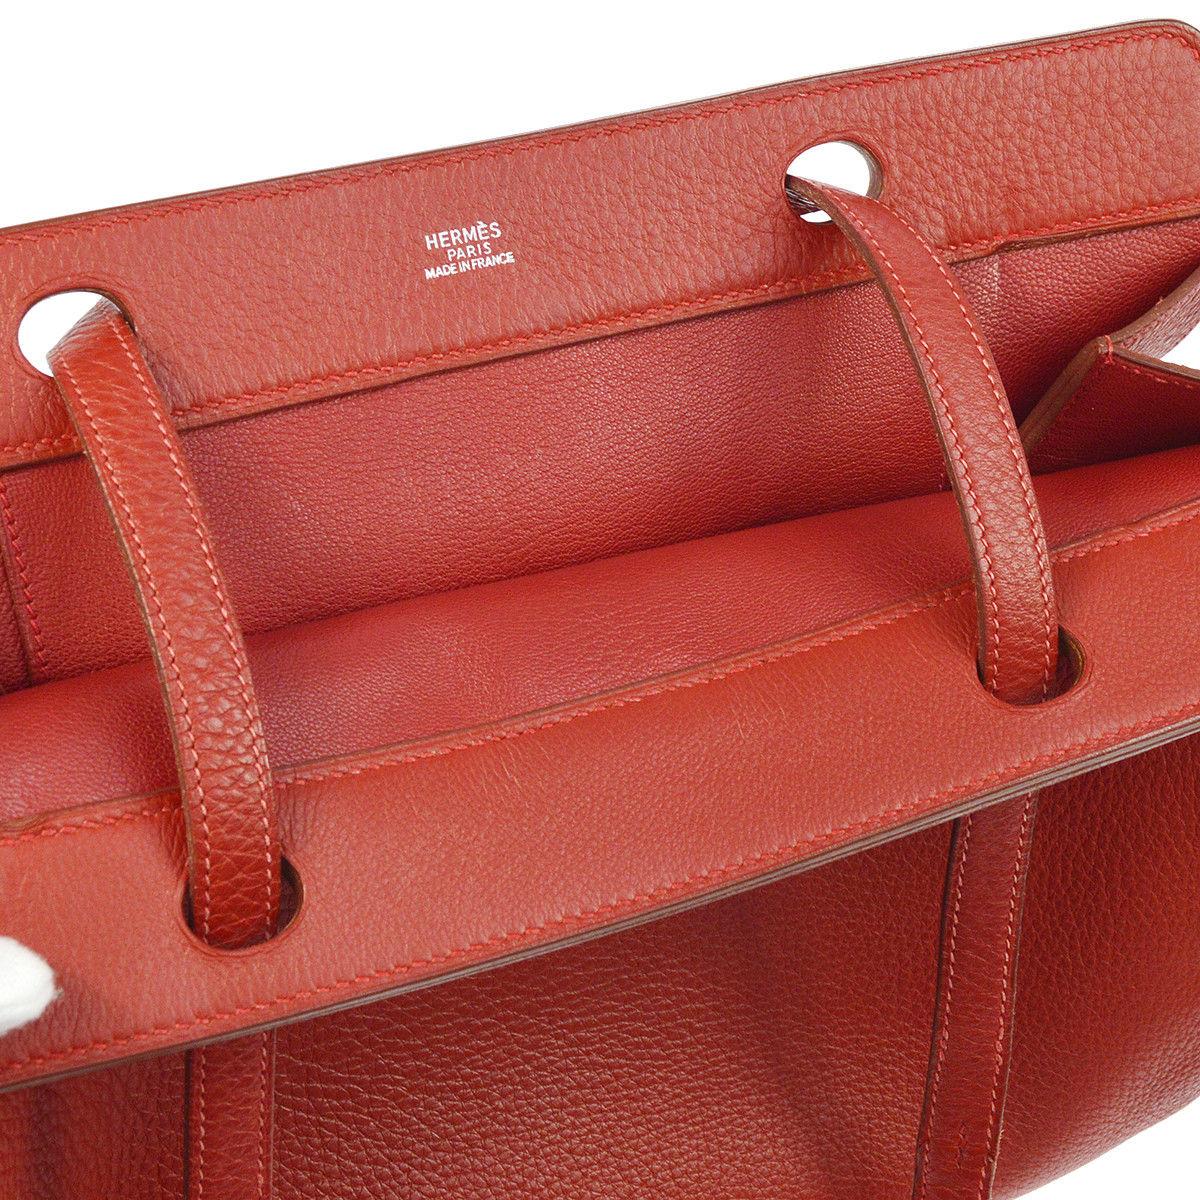 Hermes Red Leather Top Handle Satchel Carryall Travel Shoulder Tote Bag 1